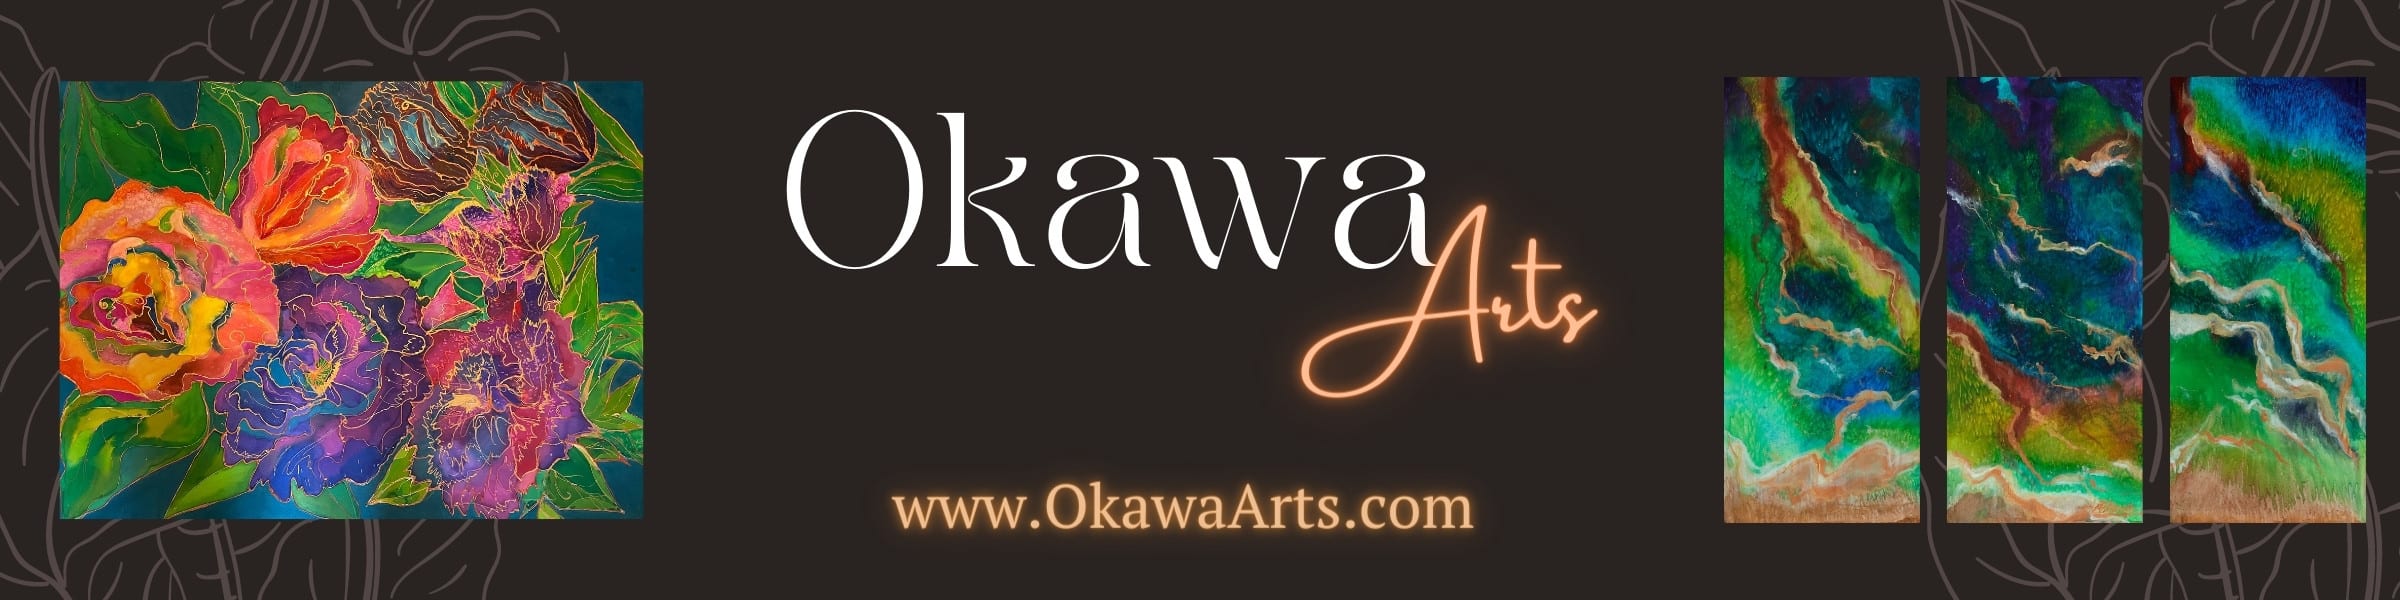 About MJ Okawa